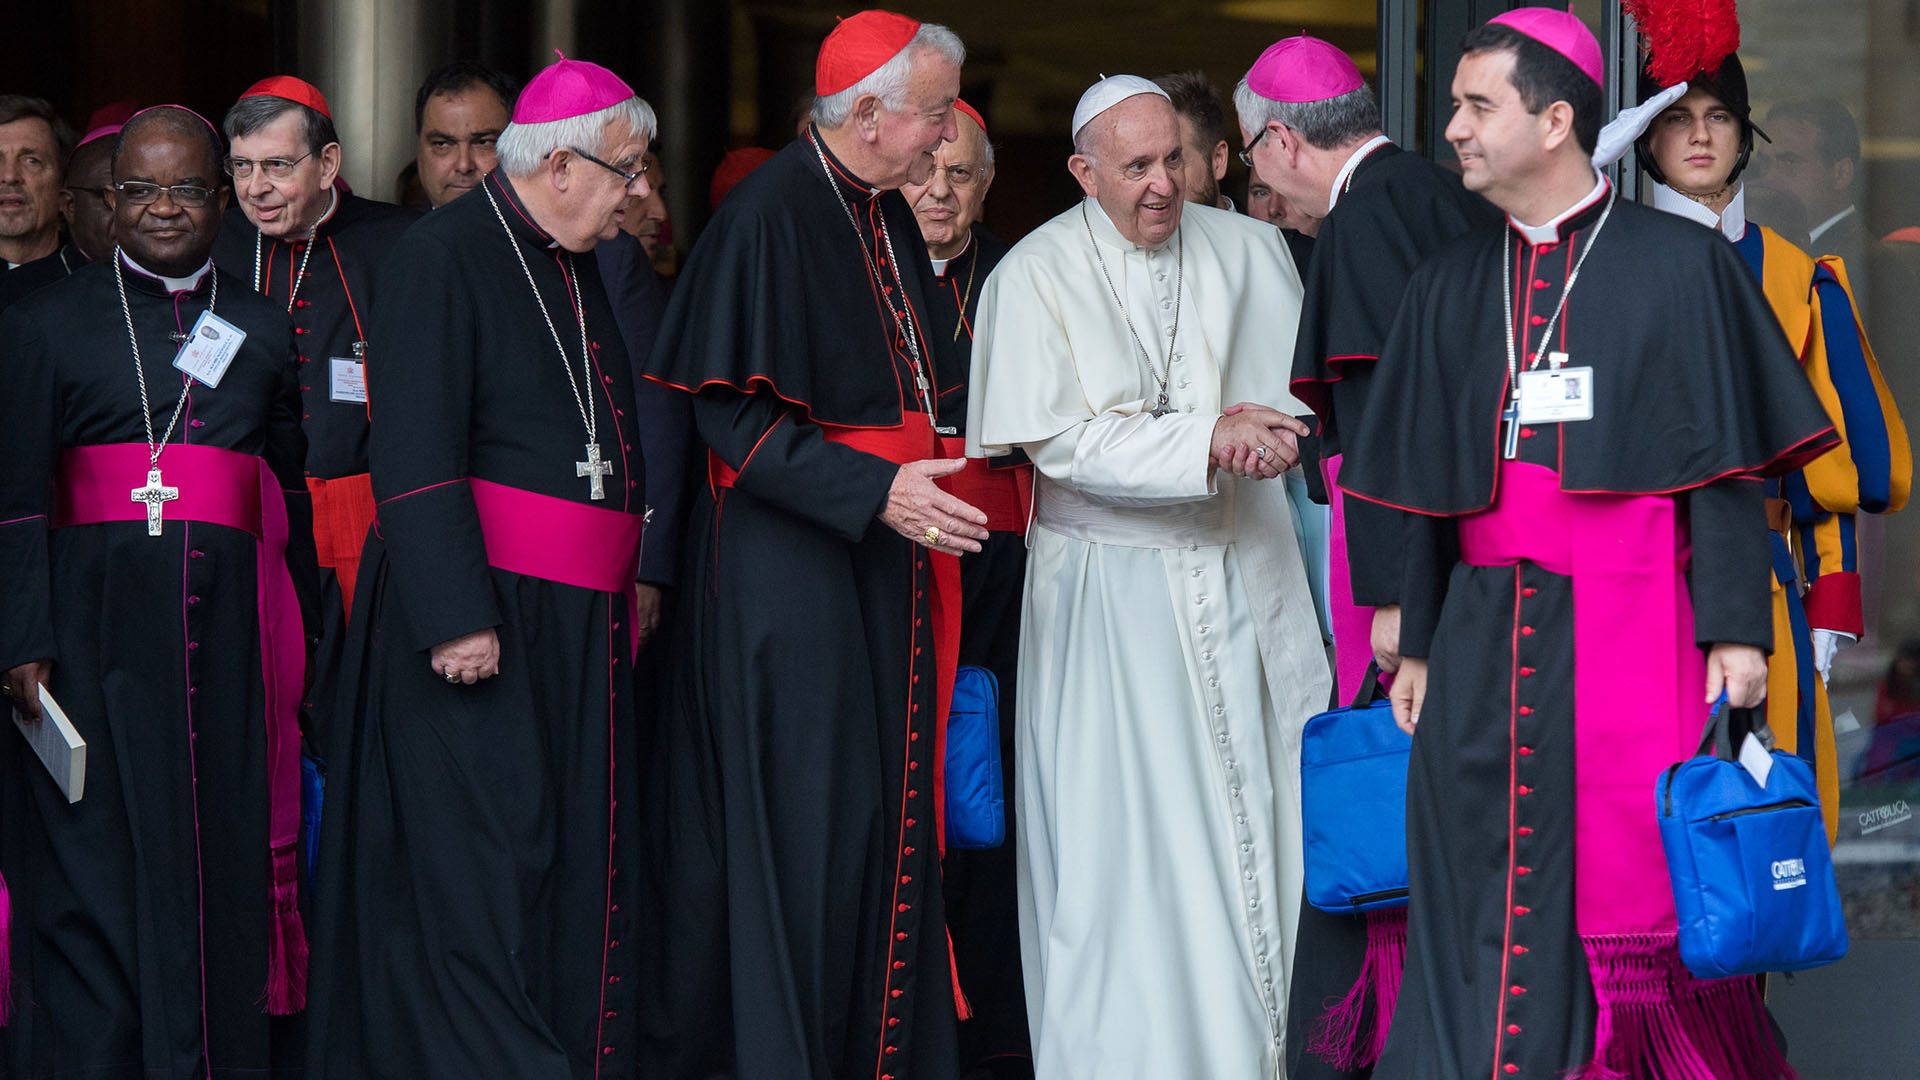 Selon Mgr Fischer, le pape se montre extrêmement disponible saluant l'ensemble des participants| © Flickr/Mazur/catholicnews.org.uk/CC BY-NC-SA 2.0